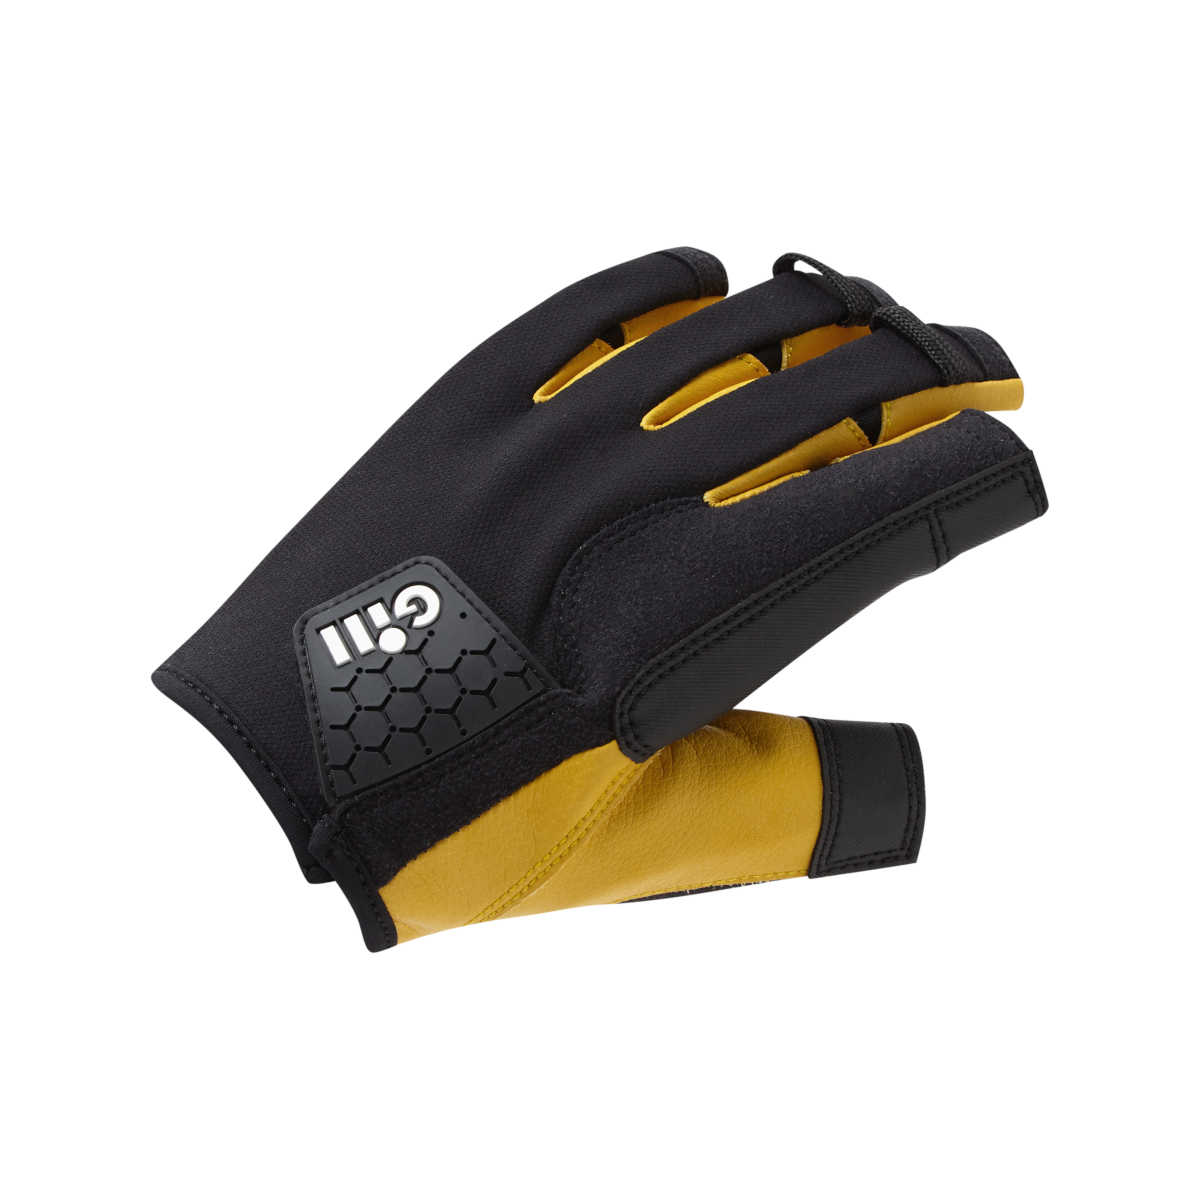 Gill Pro gants de voile à doigts courts - noir, taille XXL